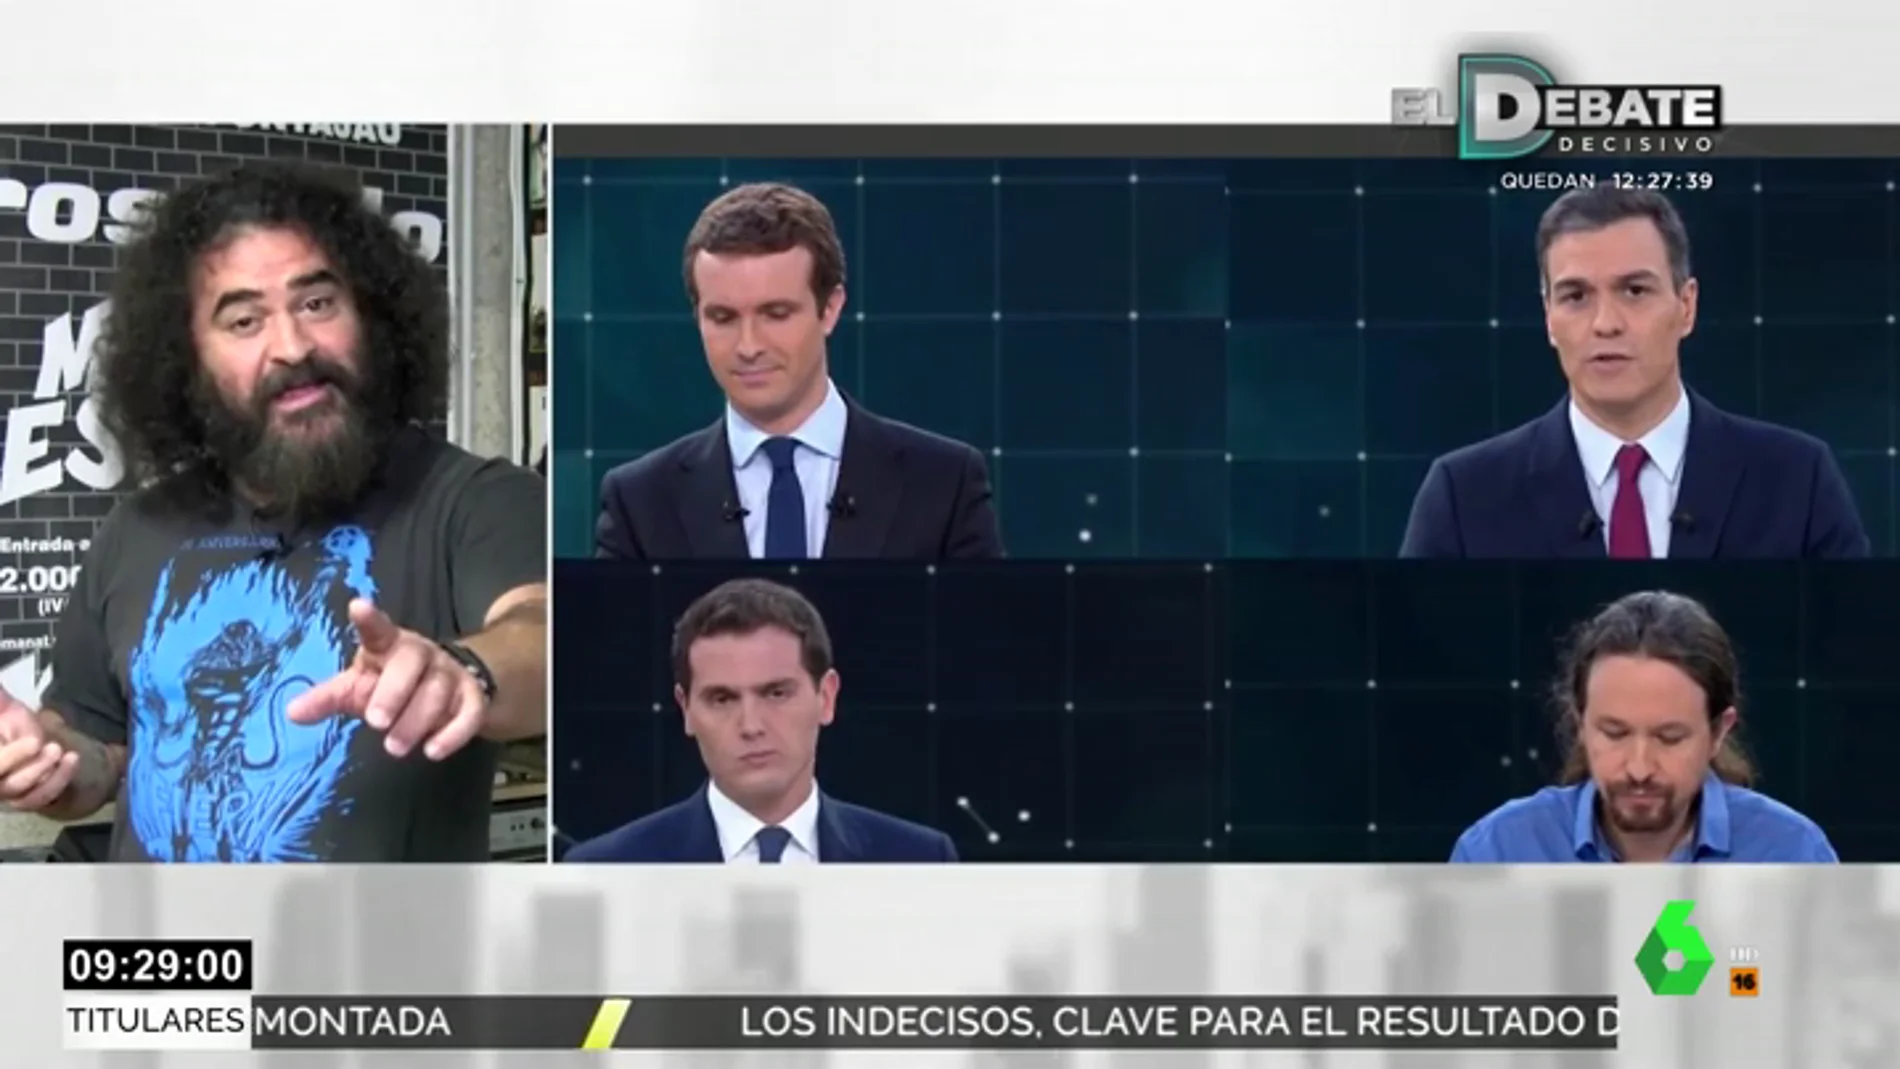 El Sevilla y el debate de TVE